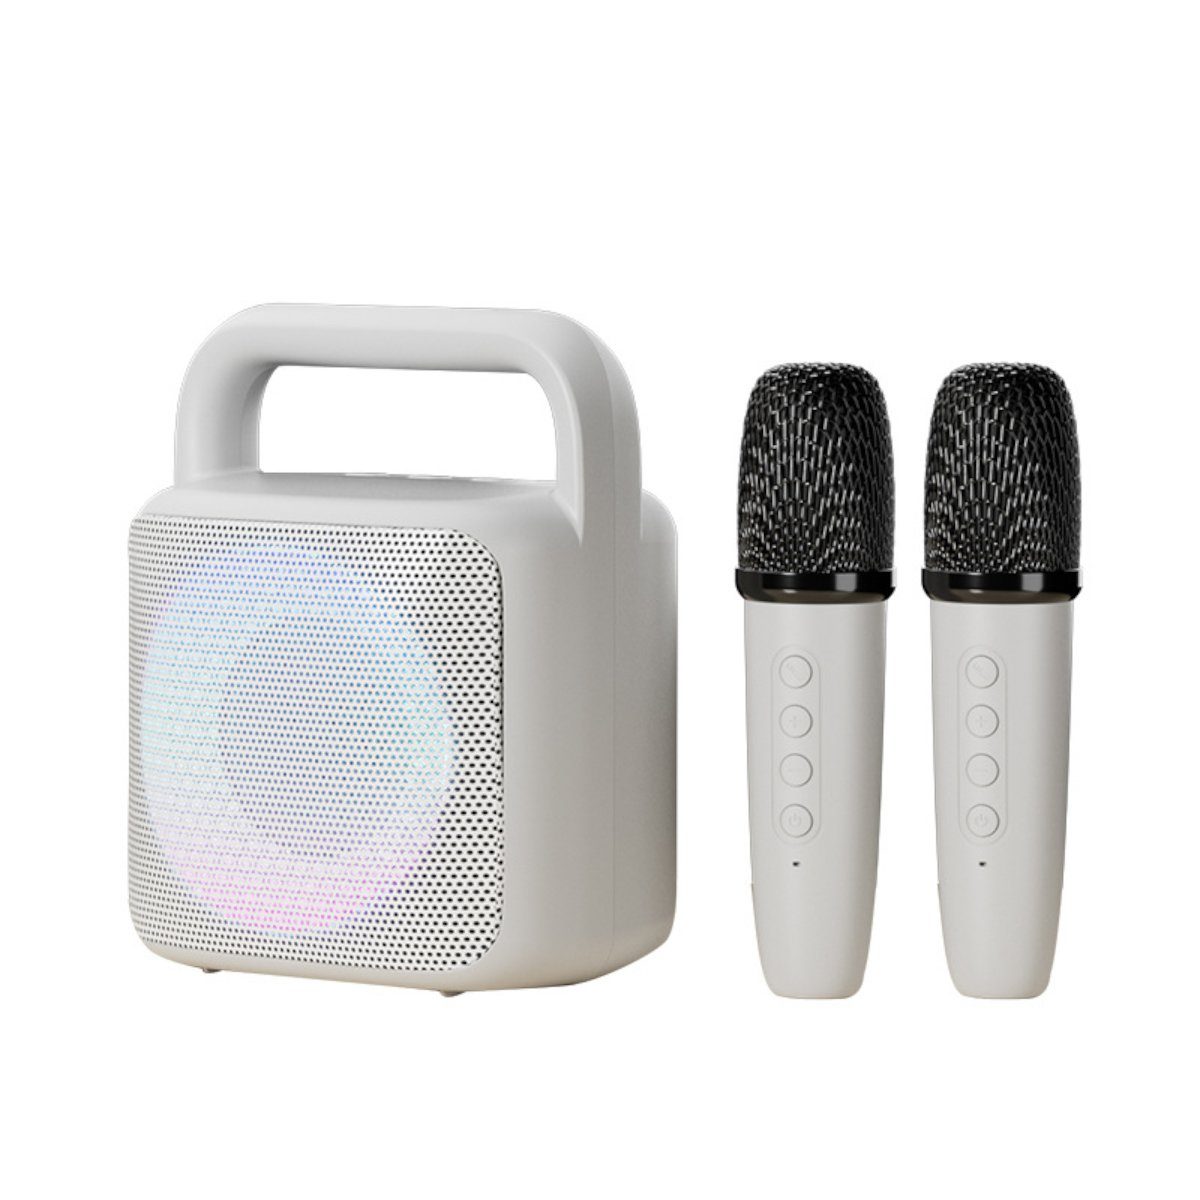 DOPWii Tragbare Karaoke-Maschine, Bluetooth-Lautsprecher Karaoke-Maschine (mit 2 Mikrofonen, LED-Lichtern und variablen Soundeffekten)